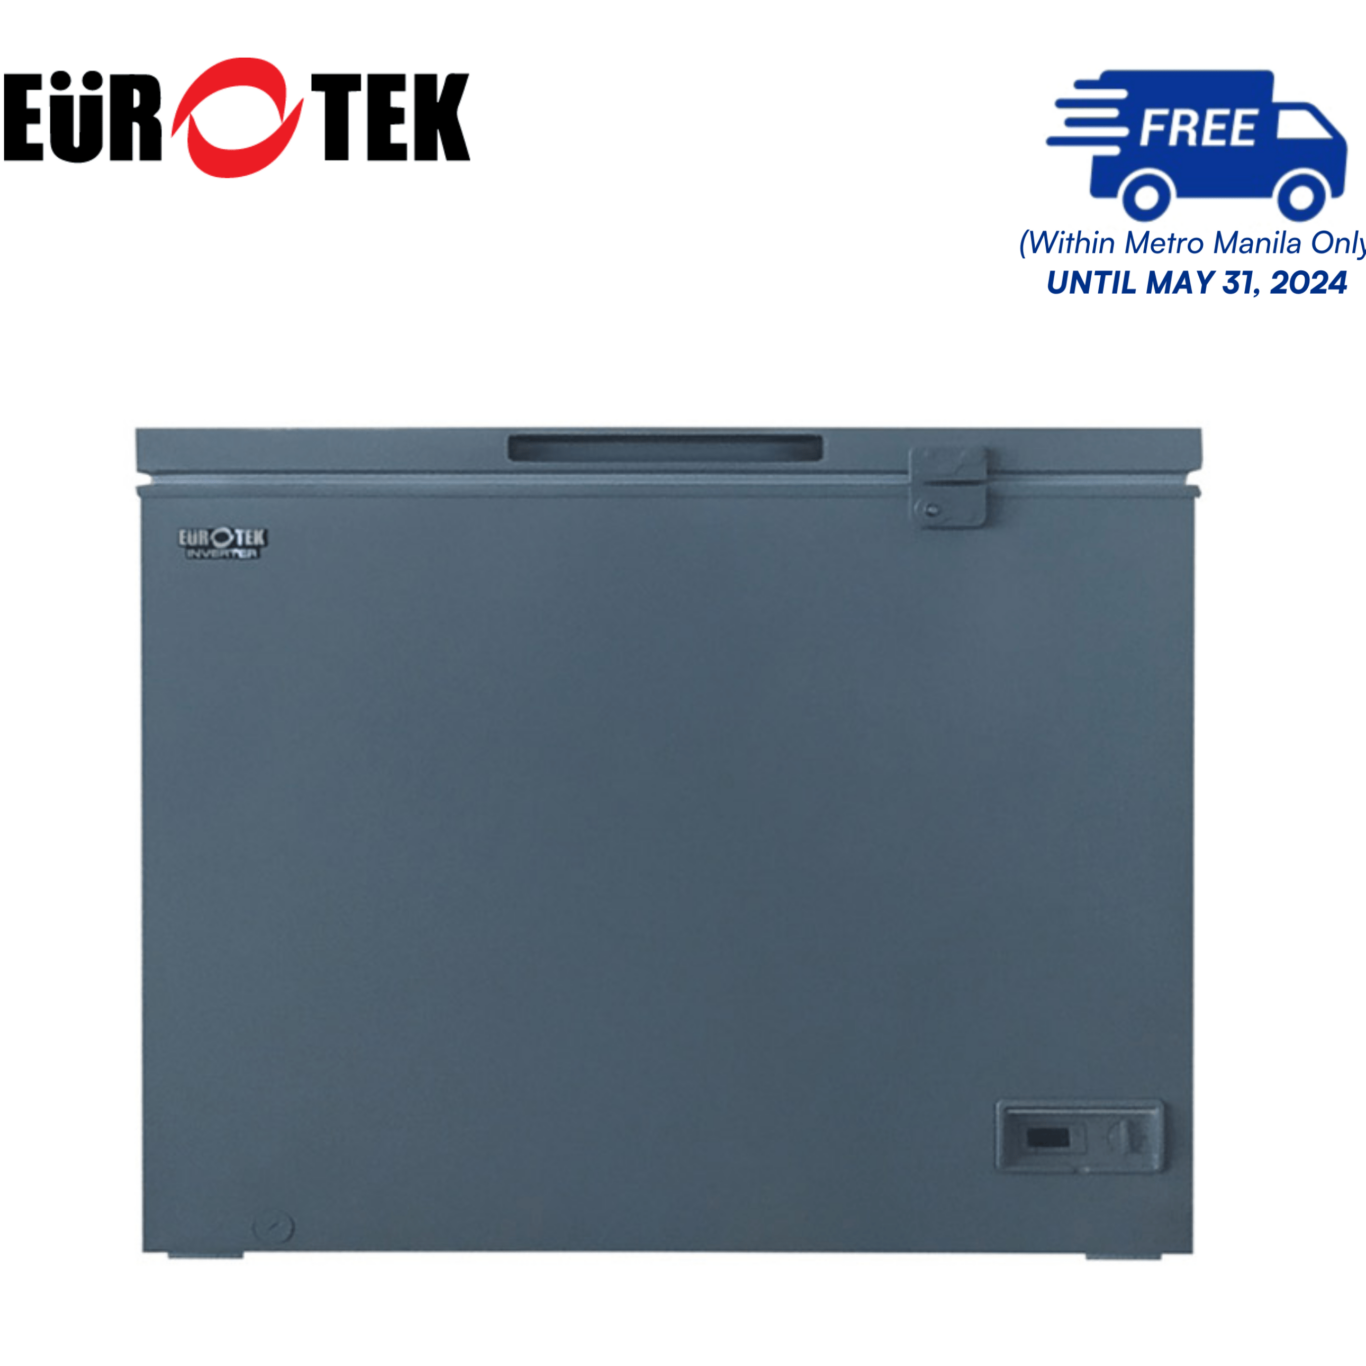 Eurotek ECF305IC